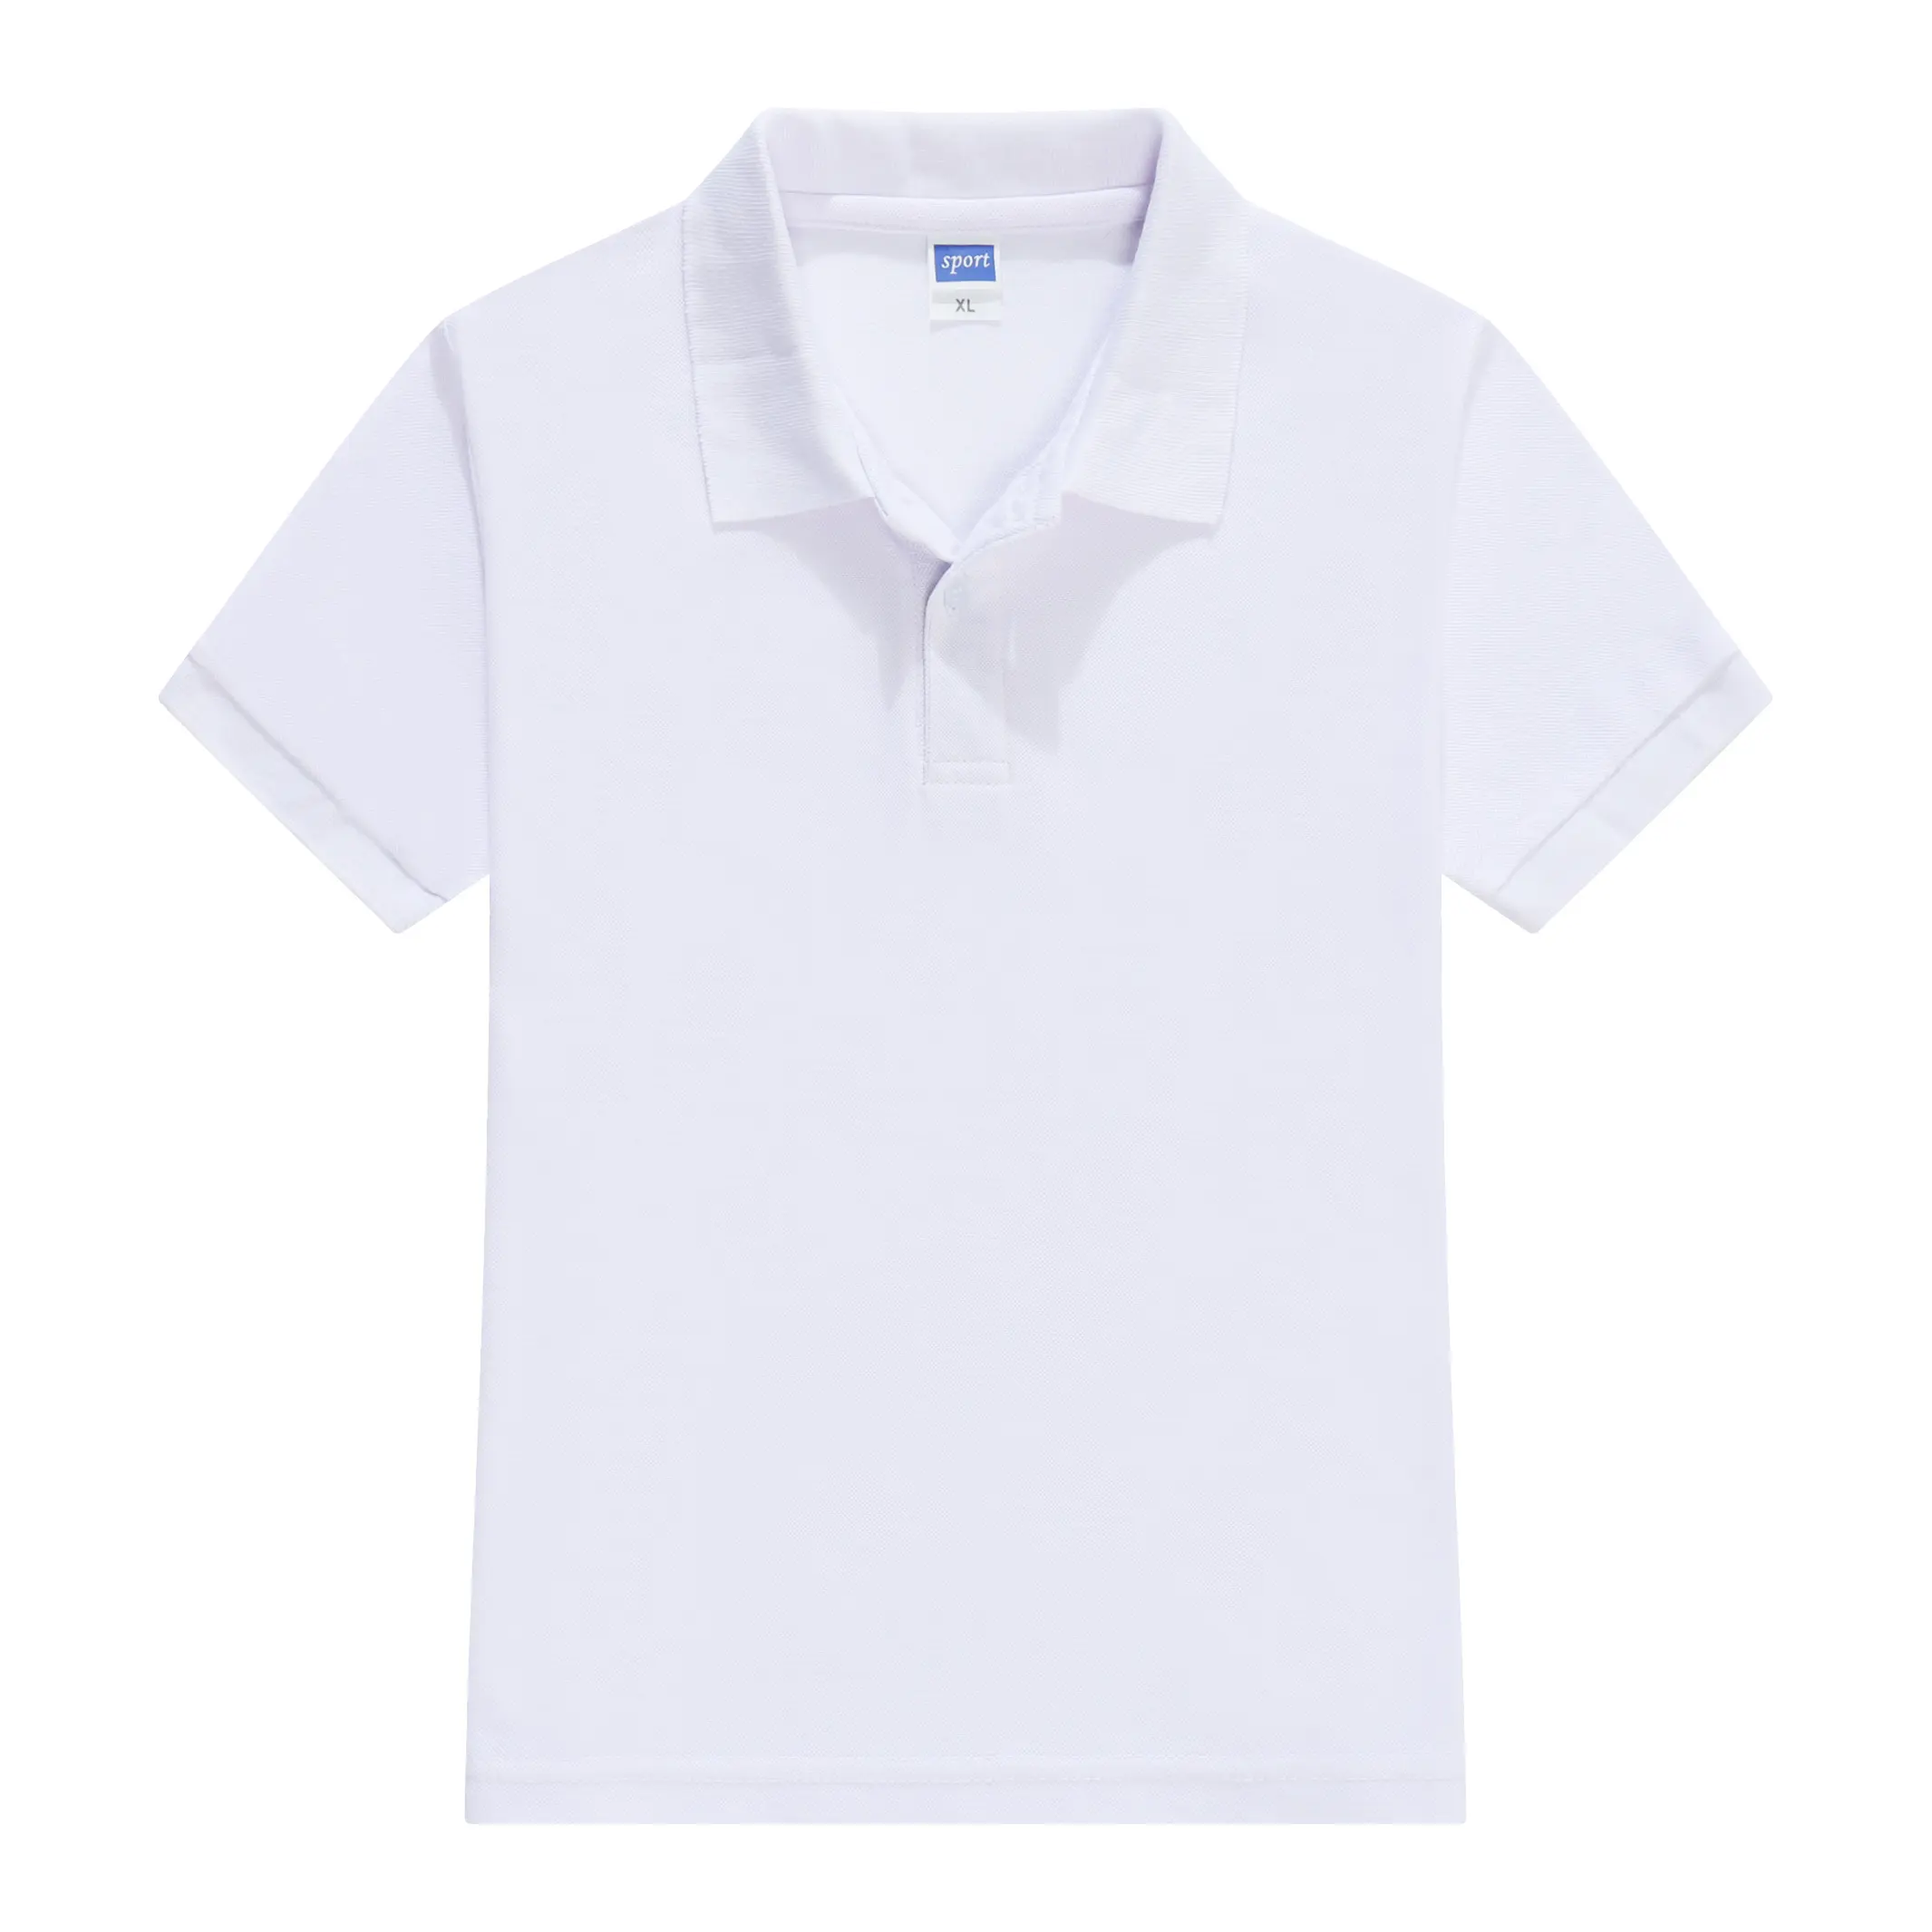 Rubysub RB-1870 di Alta Qualità Per Bambini In Bianco T-shirt di Trasferimento di Calore di Stampa T shirt Commercio All'ingrosso Per I Ragazzi/Ragazze